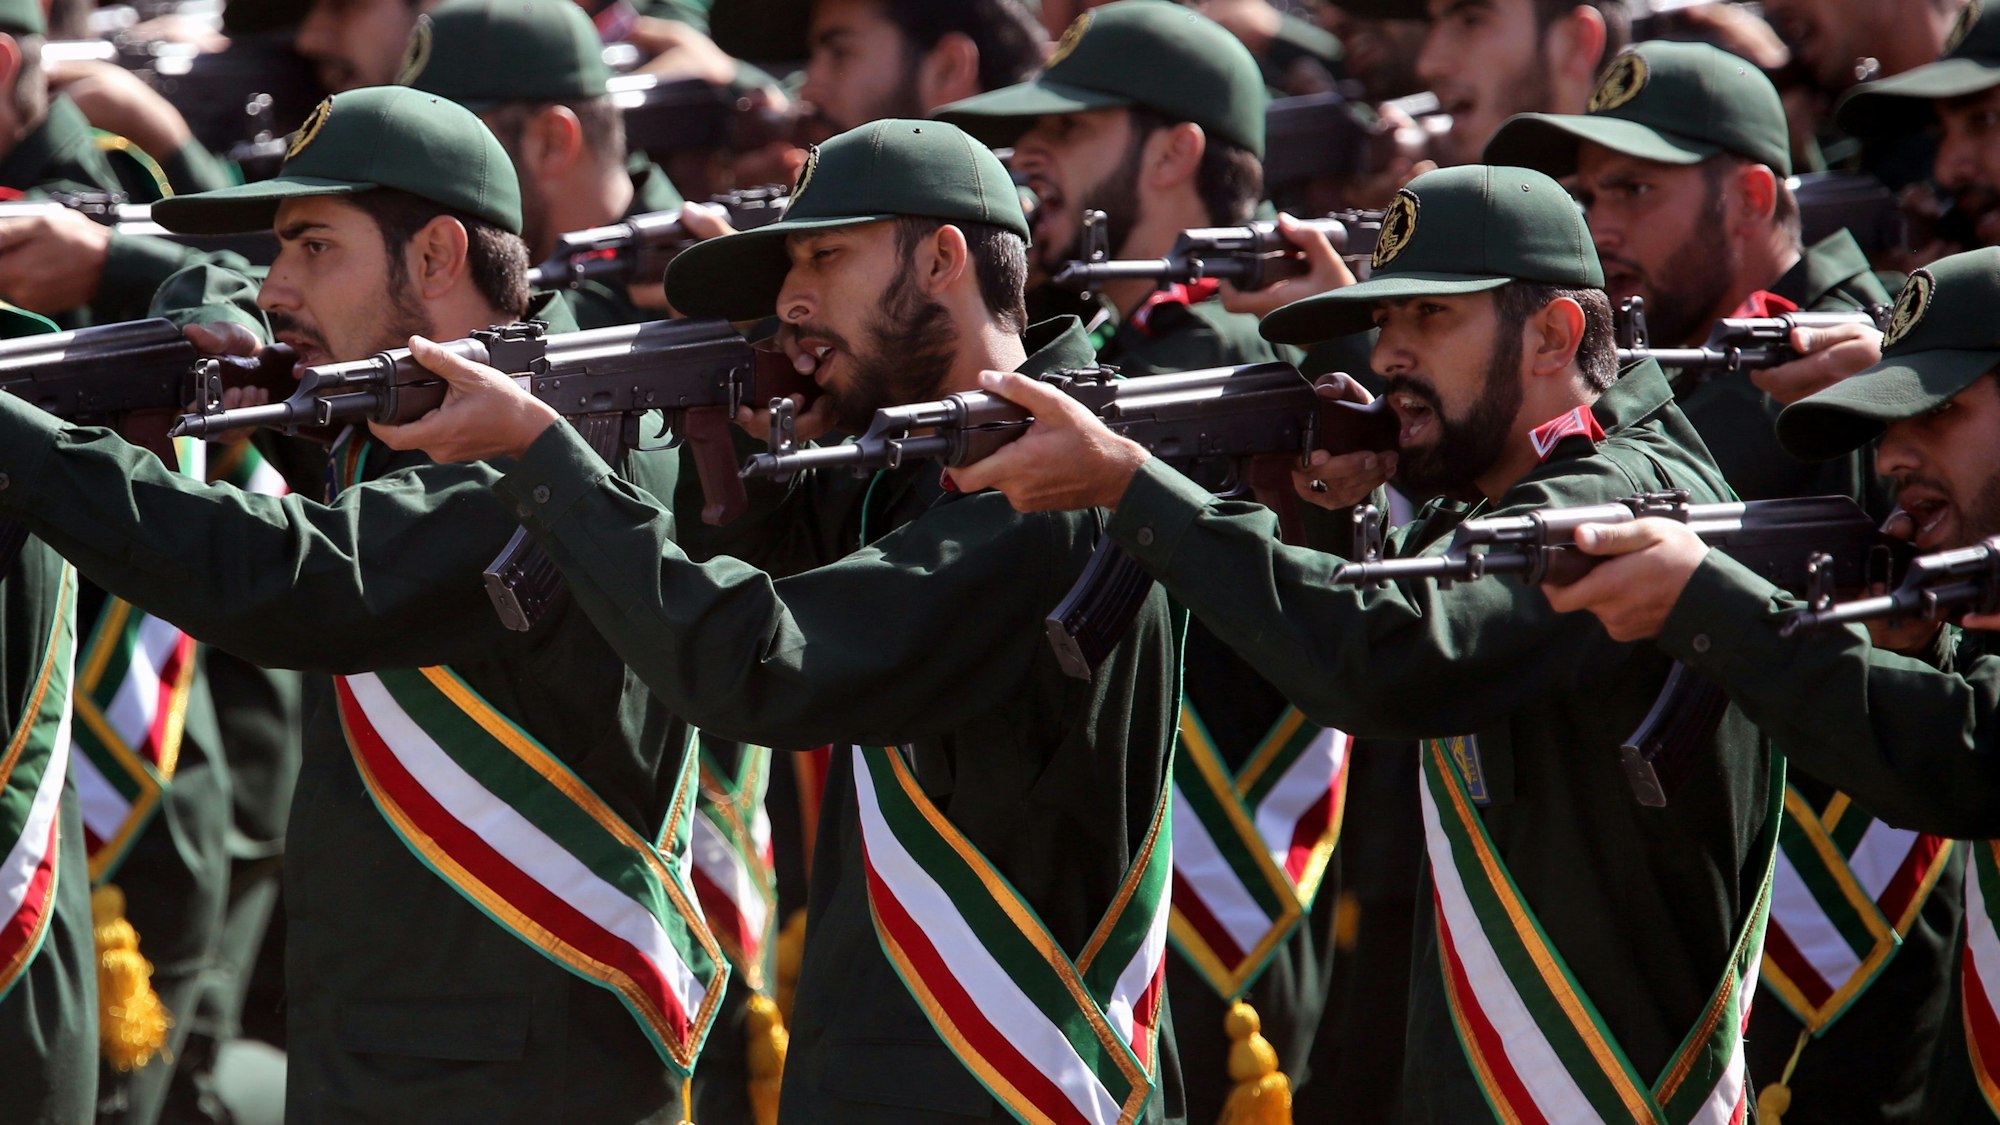 Soldaten der Islamischen Revolutionsgarde halten bei einer Parade in Teheran ihre Gewehre am Anschlag.